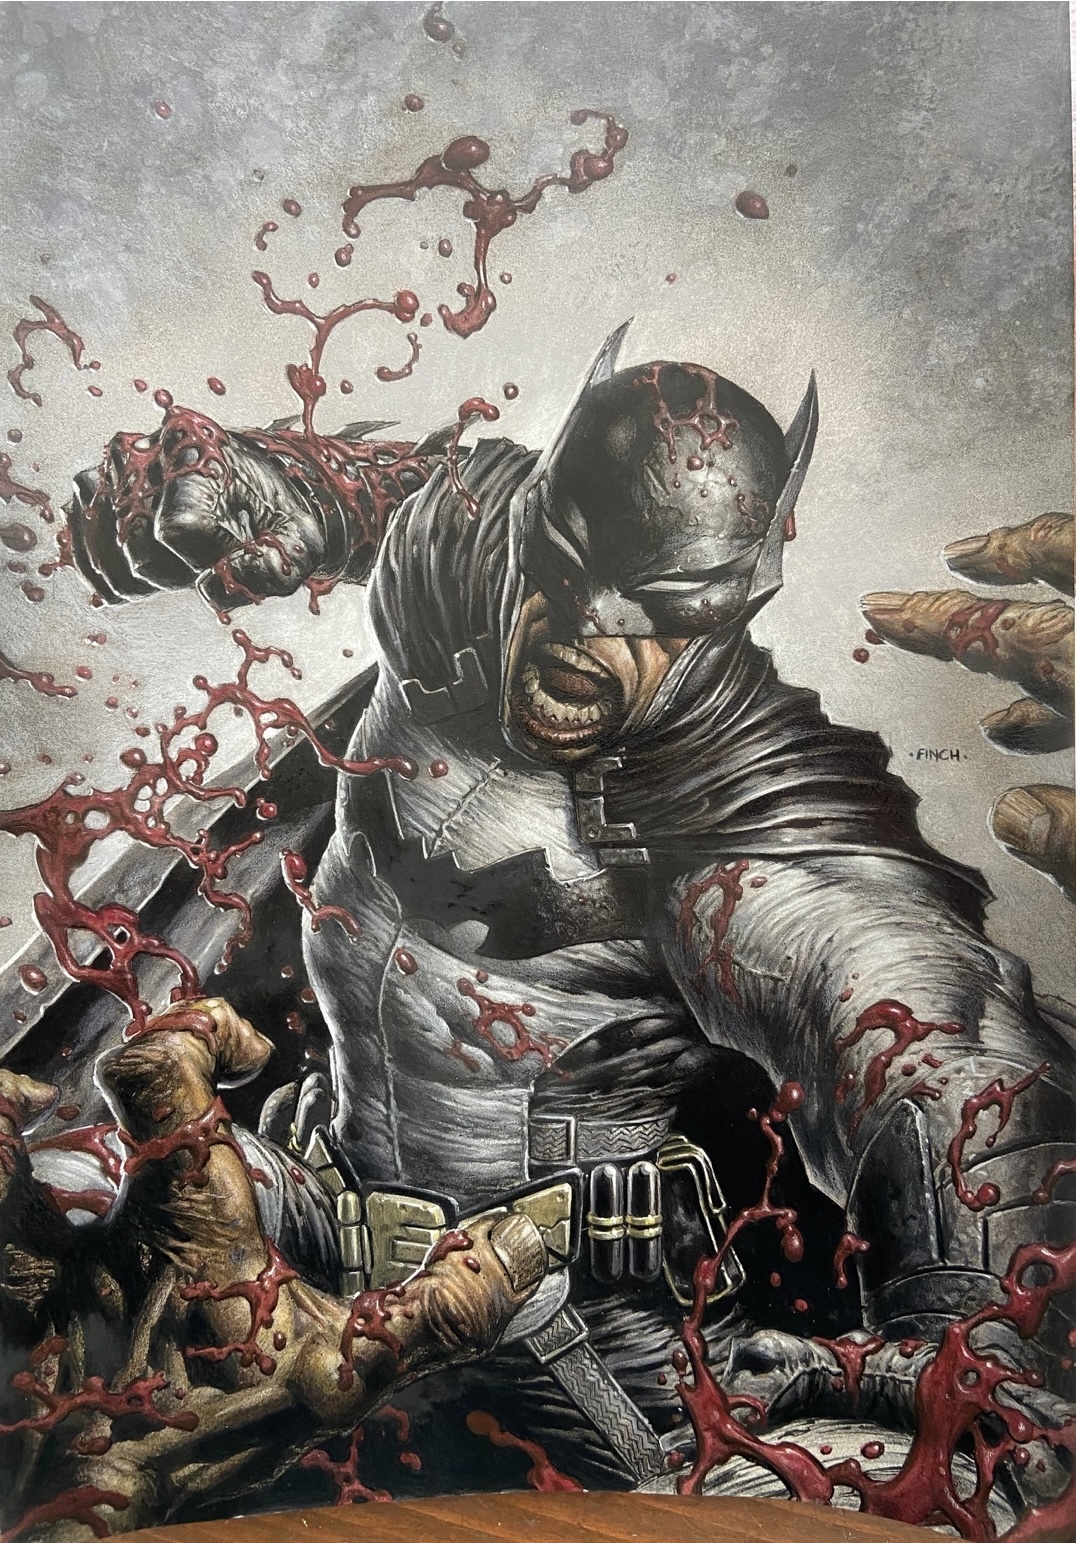 The Batman en 2022, Imágenes de batman, Cómics de batman, Arte súper héroe